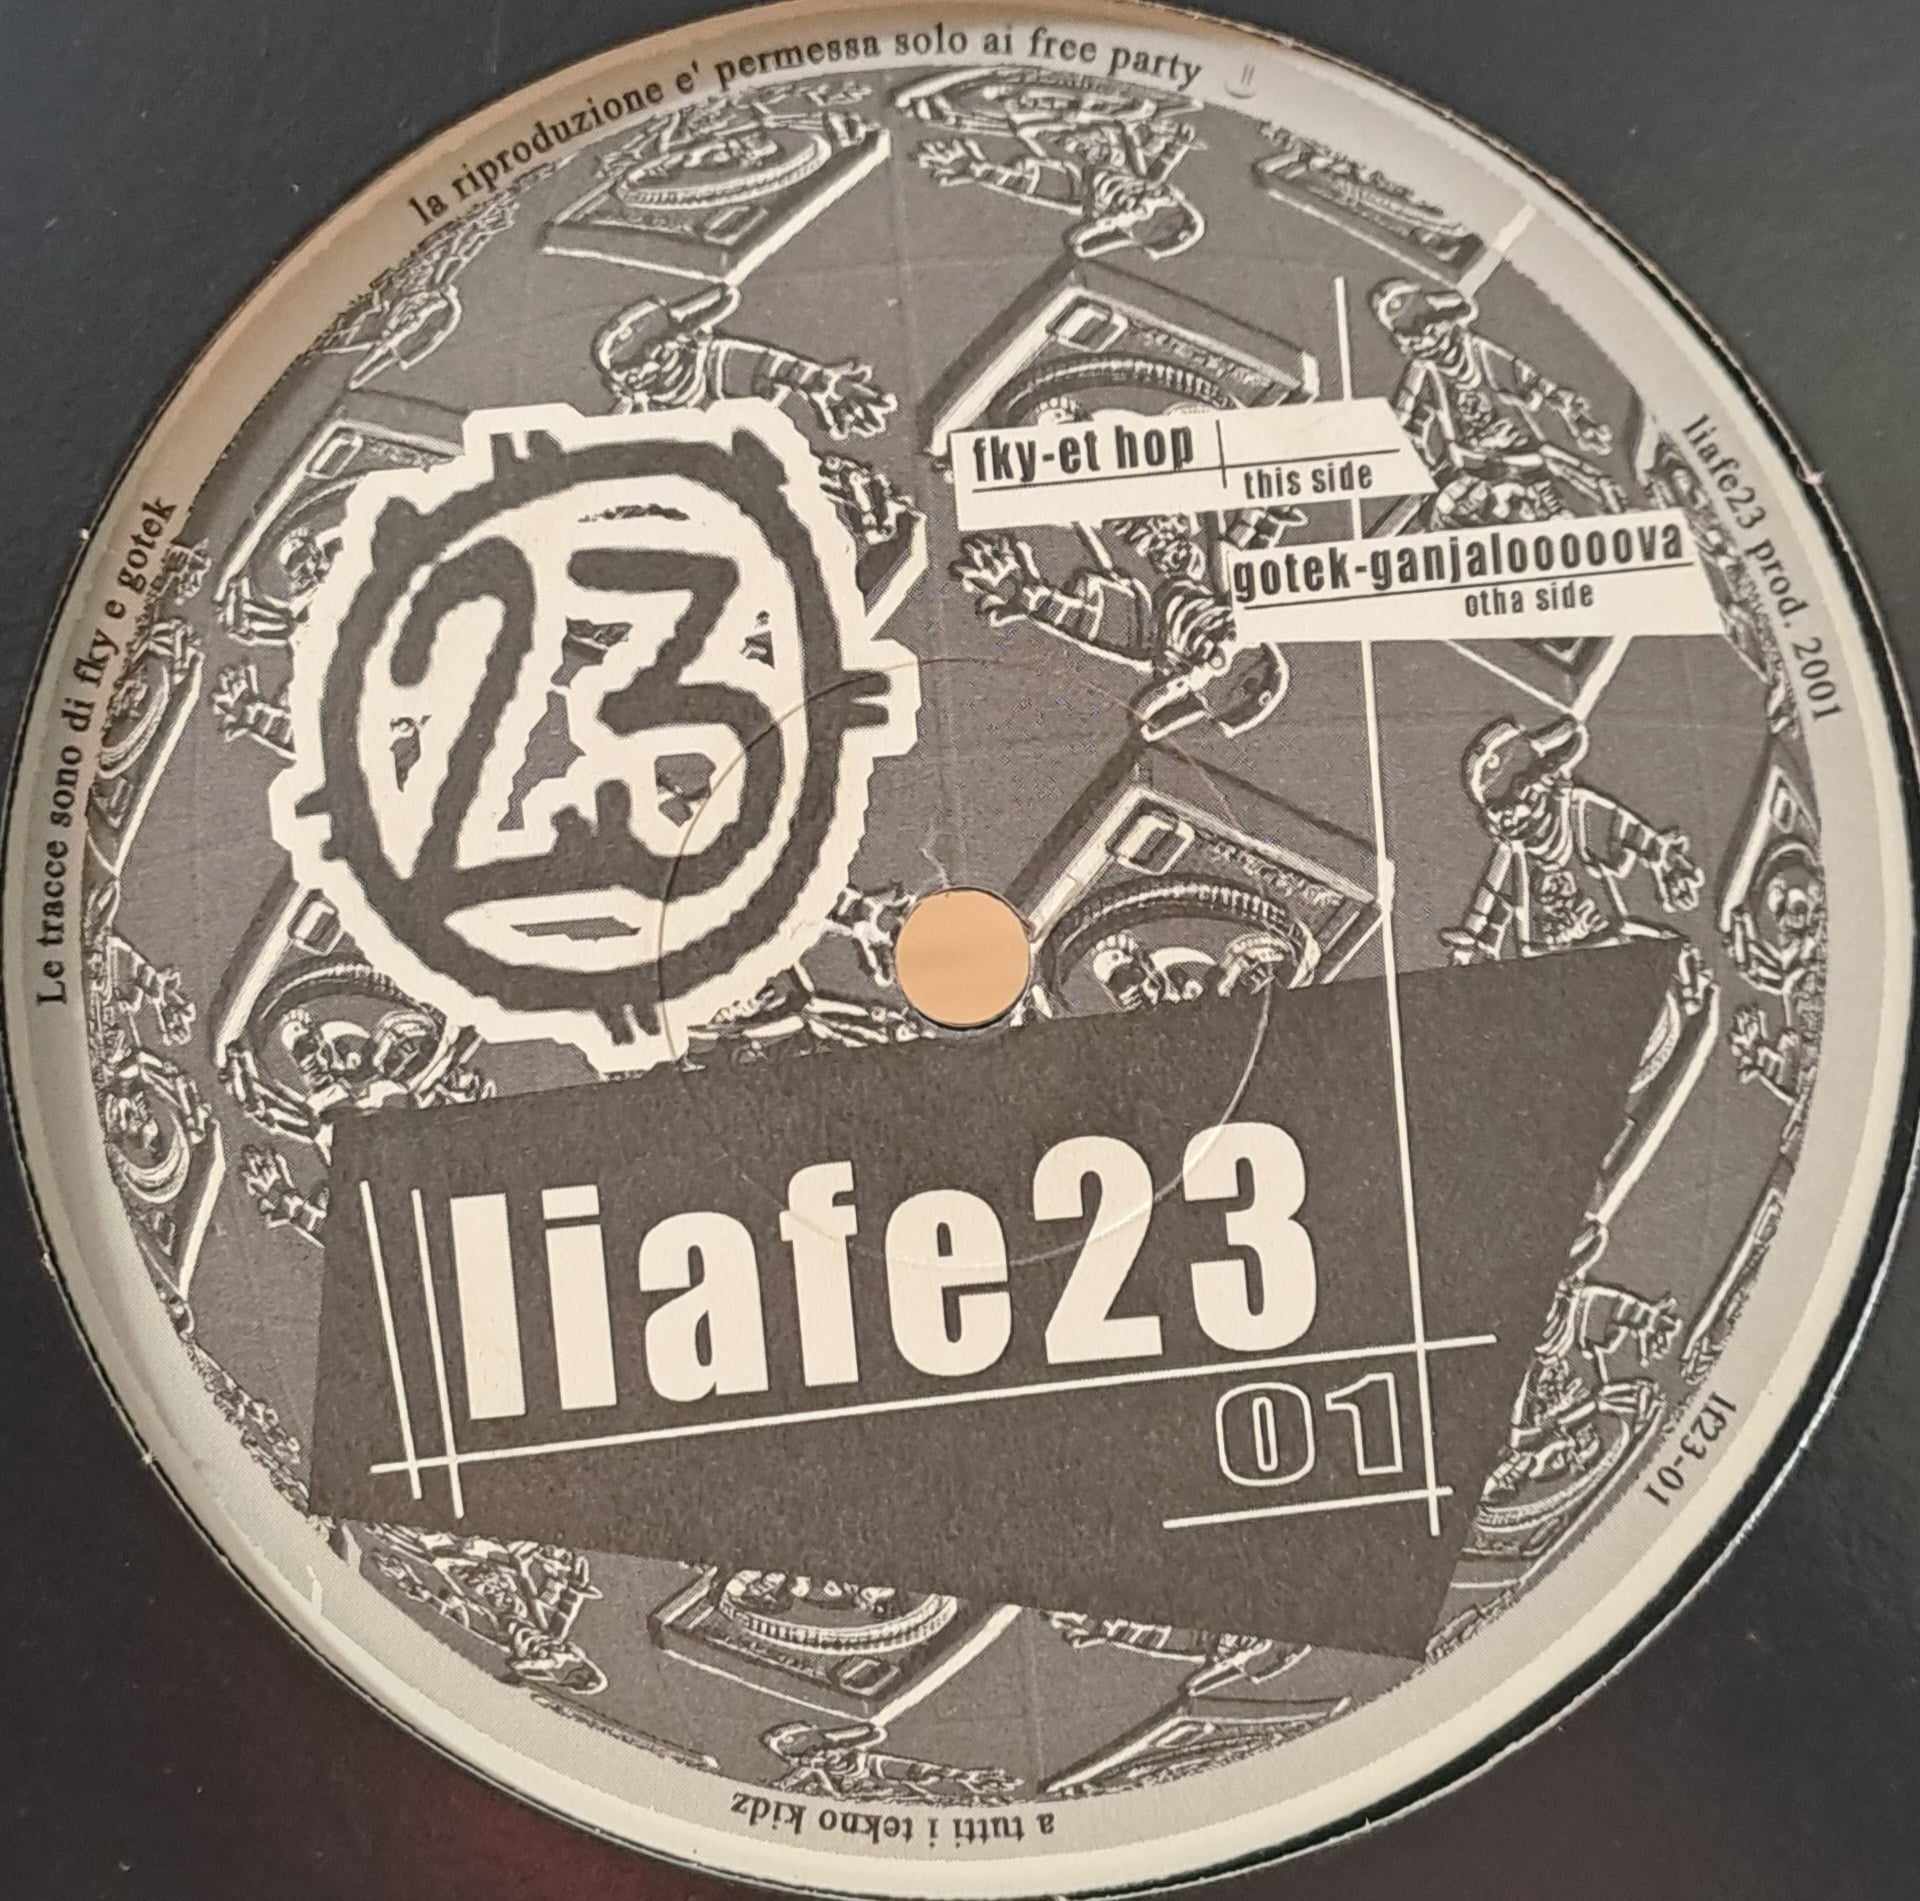 Liafe 23 01 - vinyle freetekno